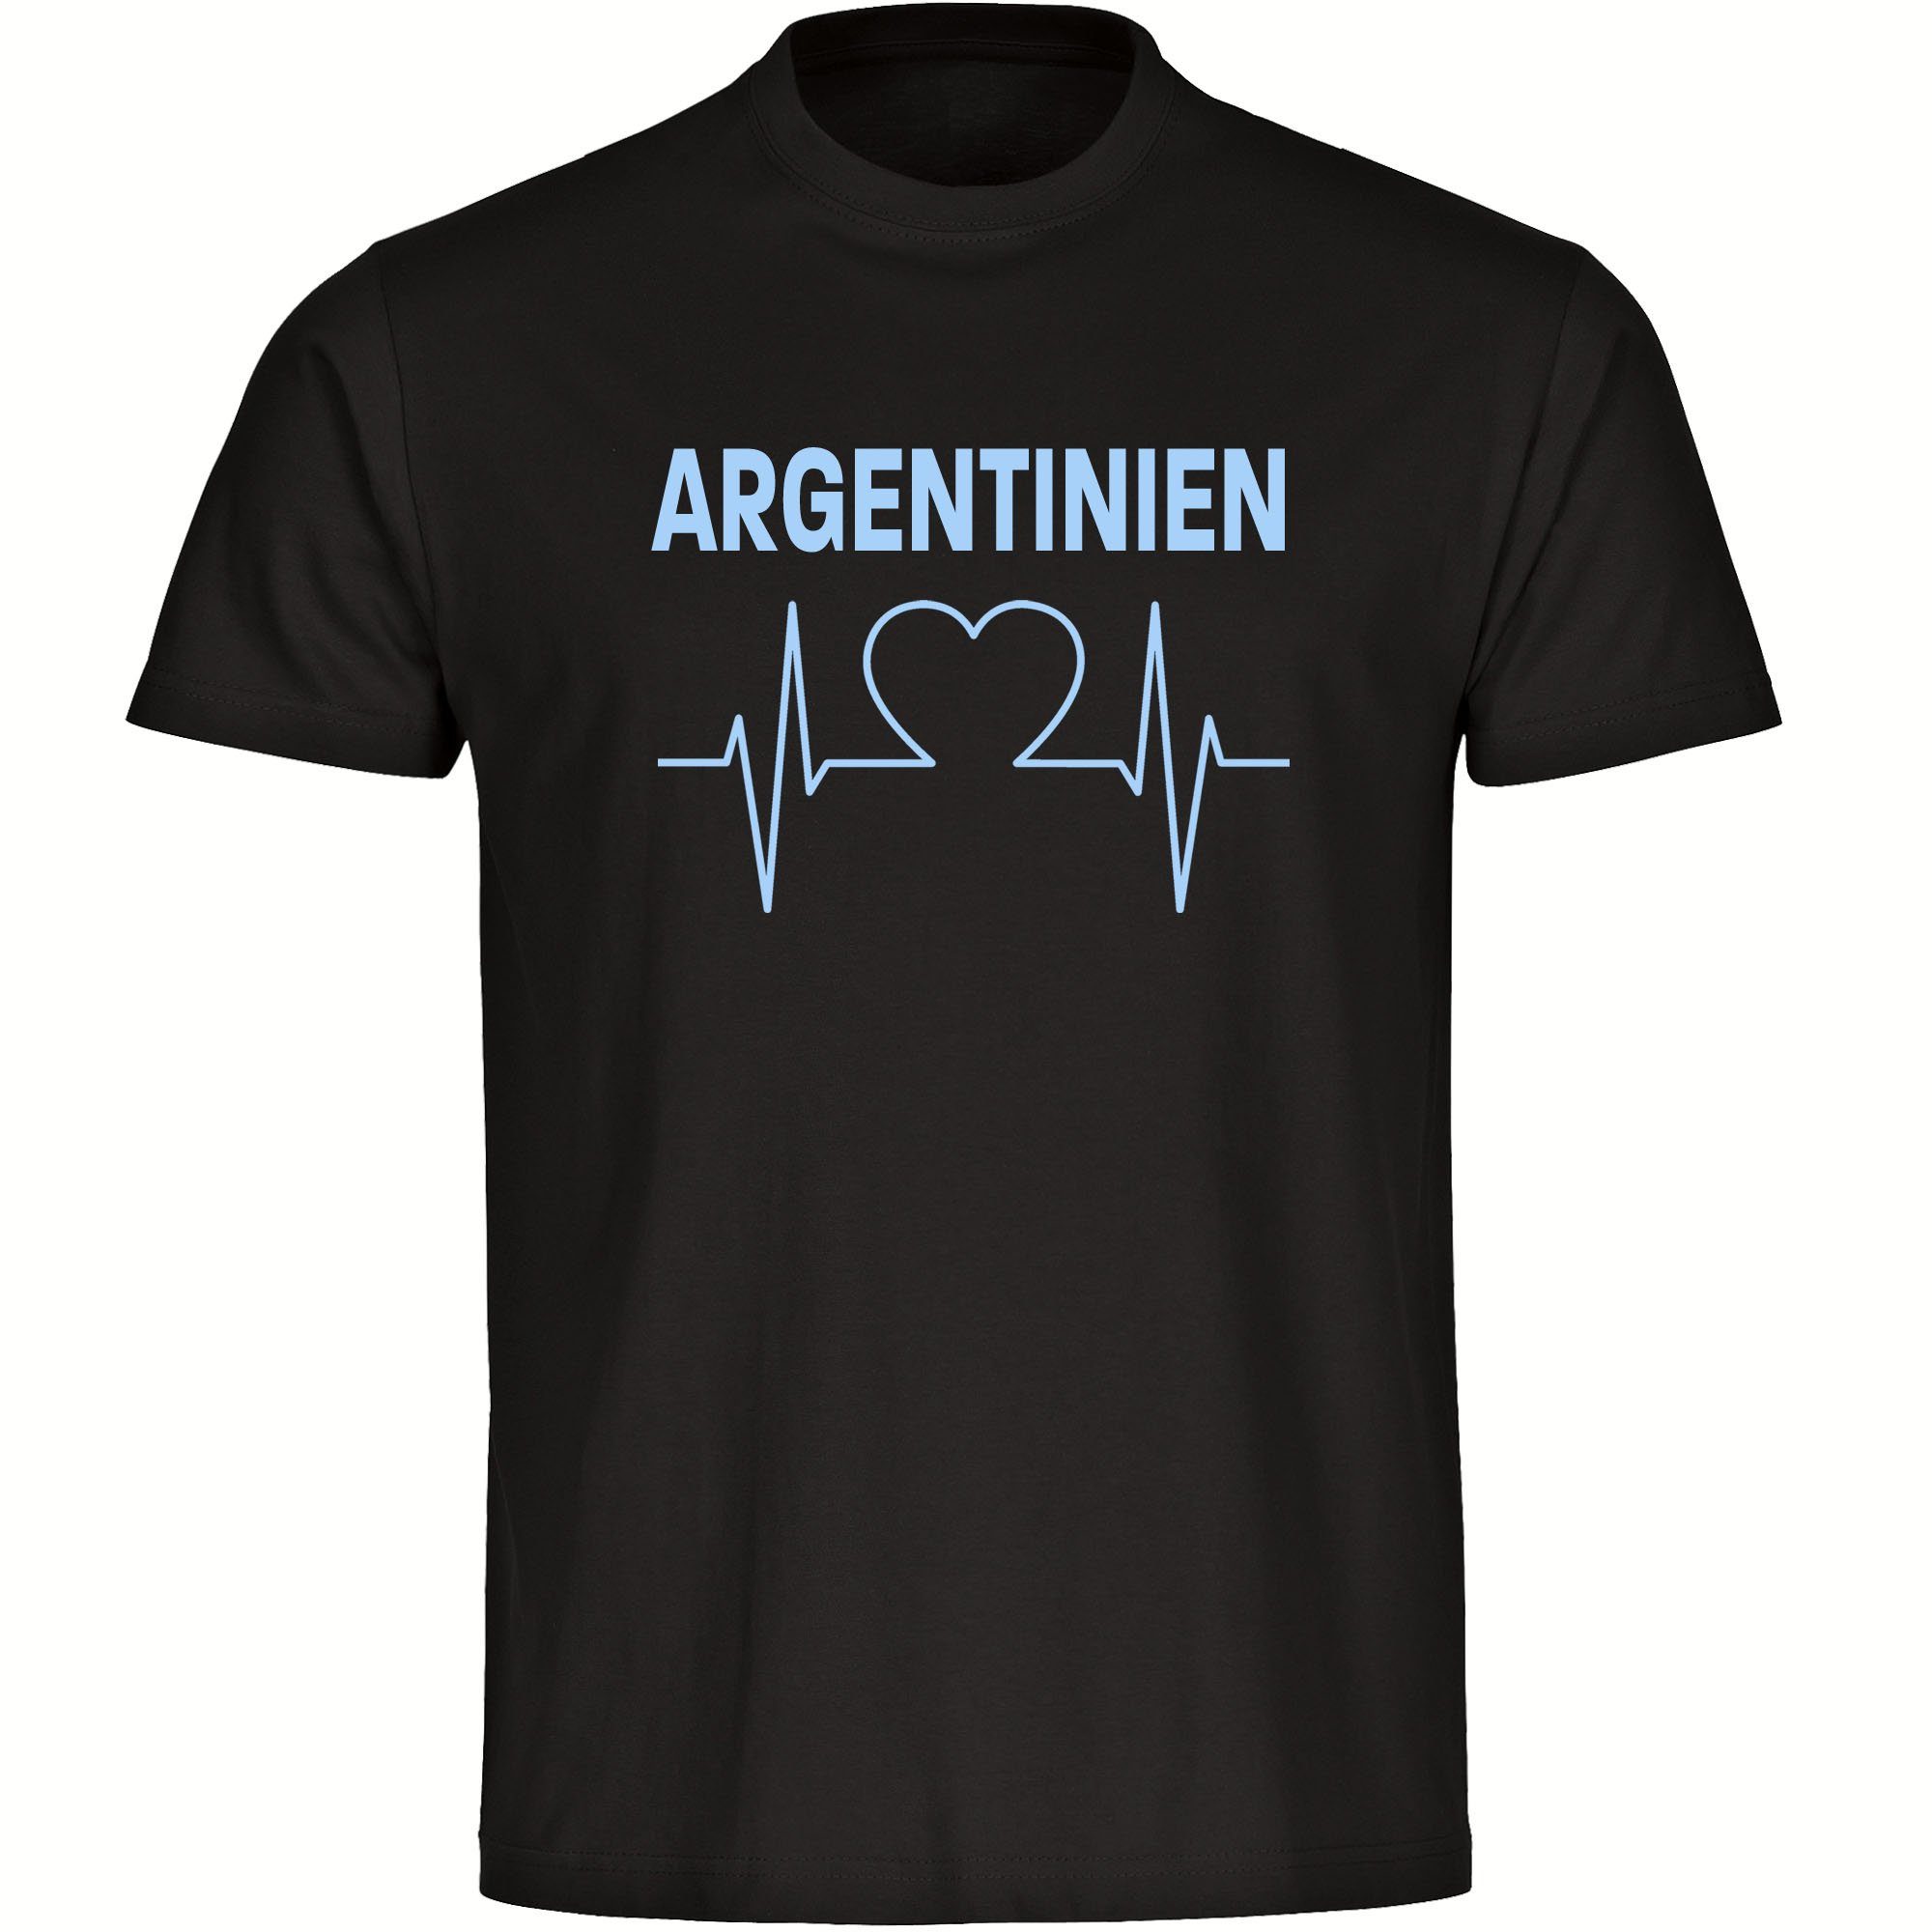 multifanshop T-Shirt Herren Argentinien - Herzschlag - Männer